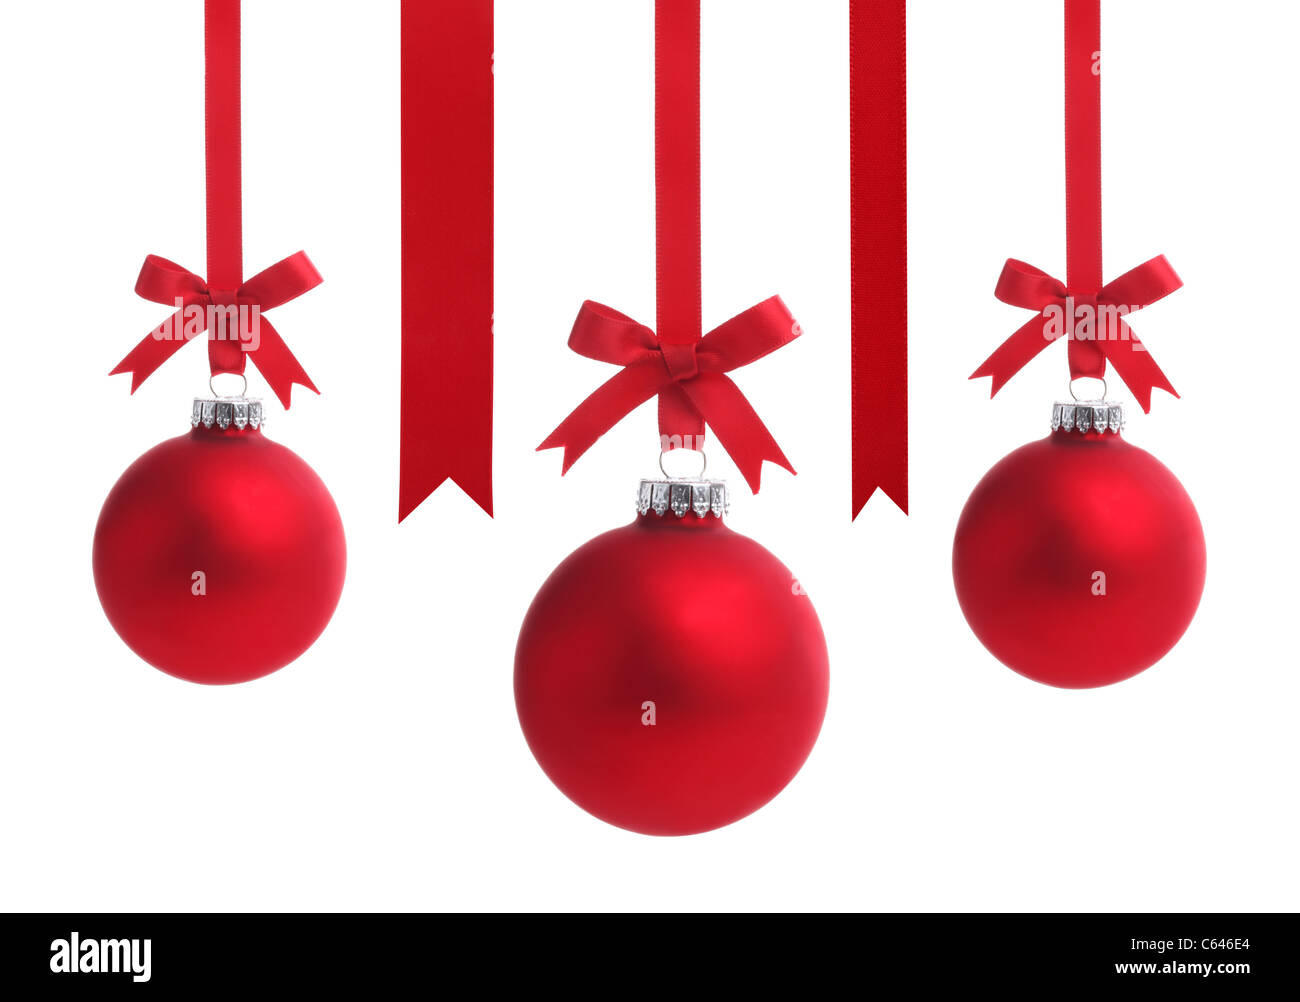 Boule de Noël rouge avec ruban bow,isolé sur fond blanc Photo Stock - Alamy